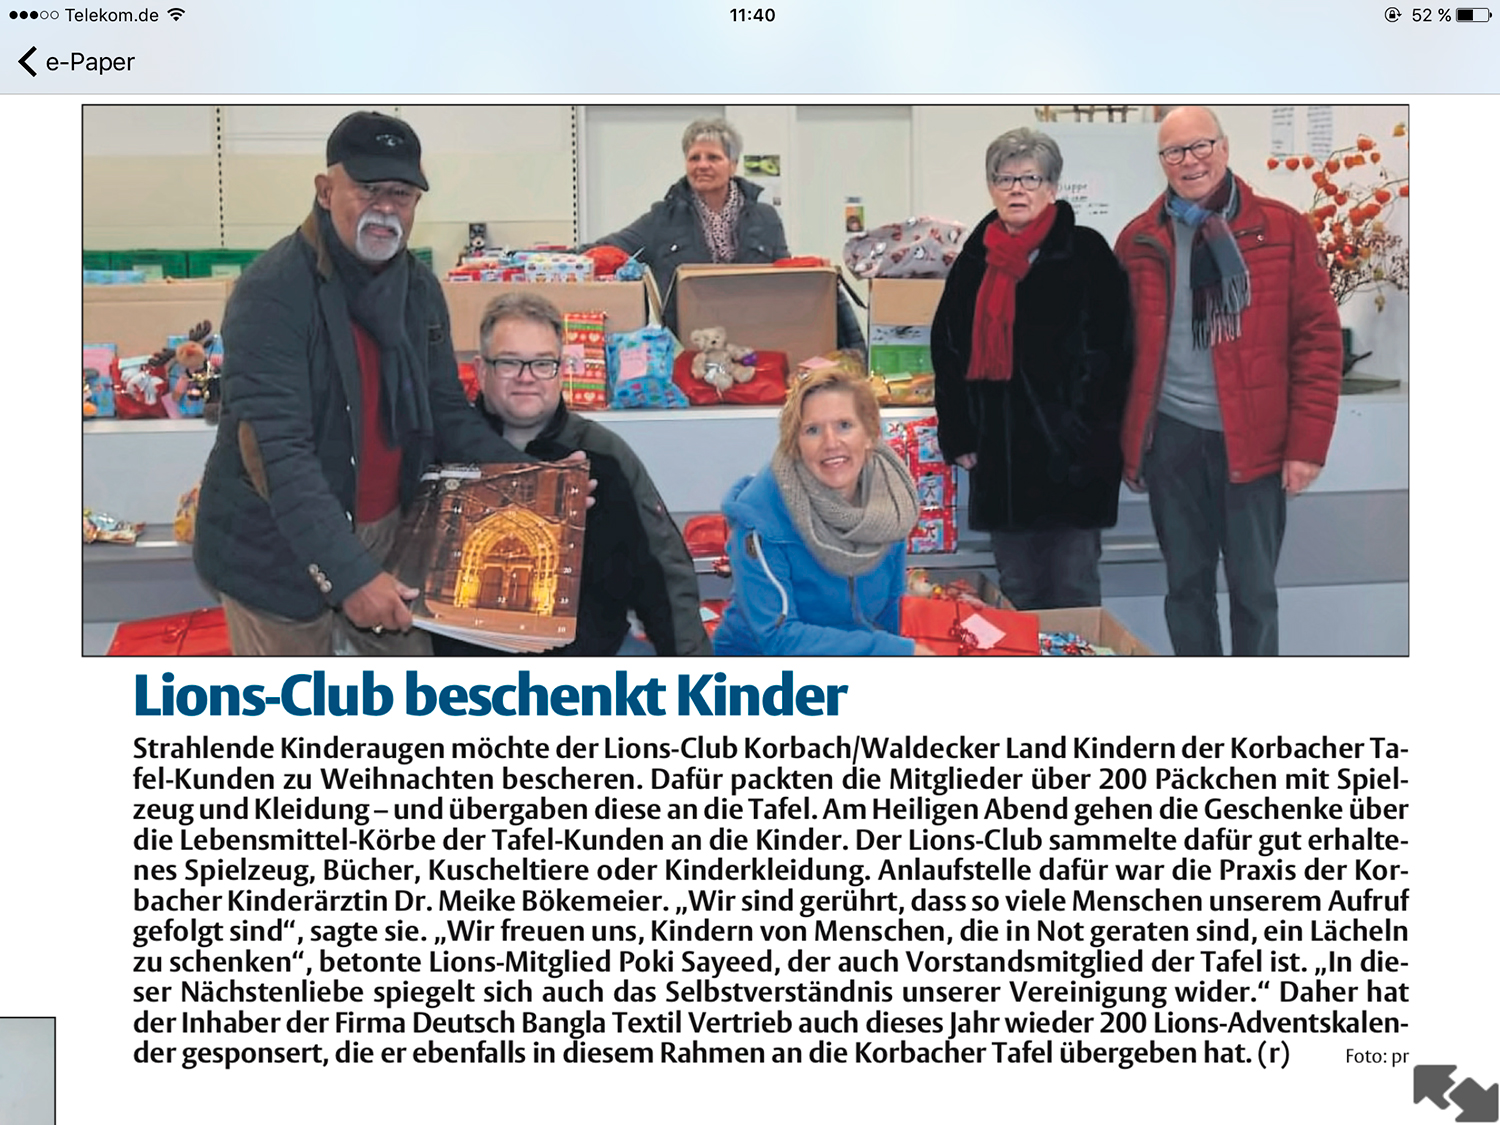 Lions Club Korbach-Waldecker Land beschenkt Kinder der Korbacher Tafel-Kunden